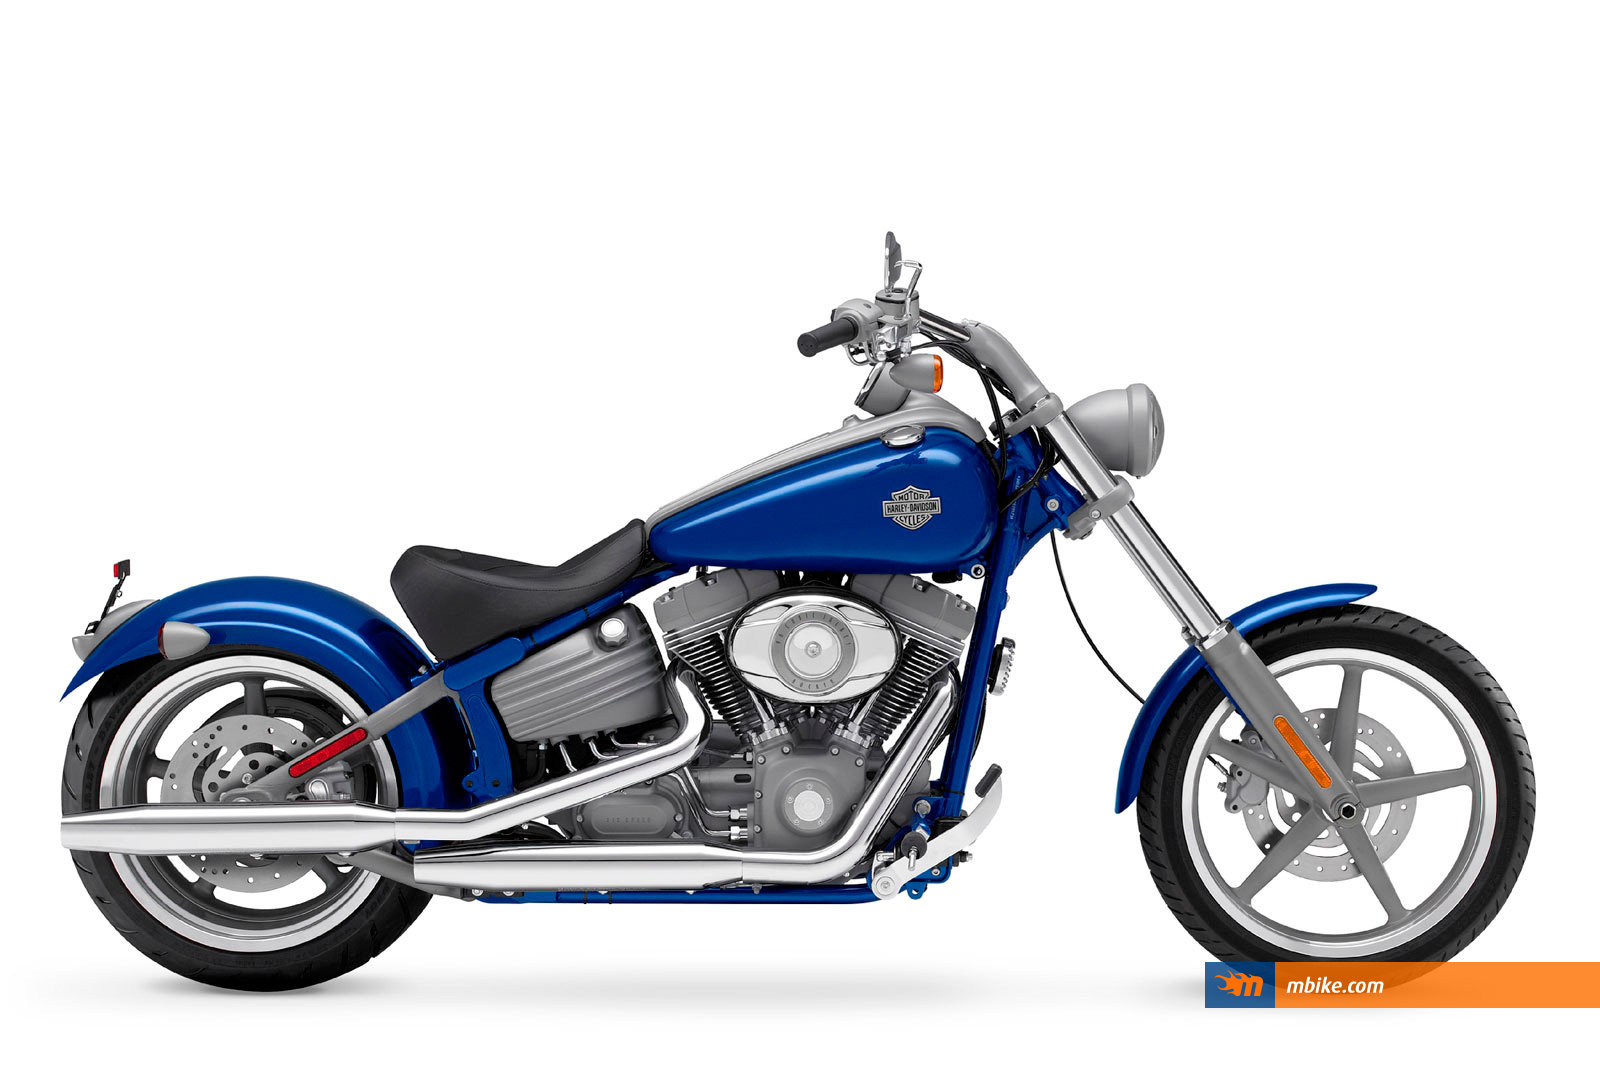 2009 Harley-Davidson FXCWC Rocker C